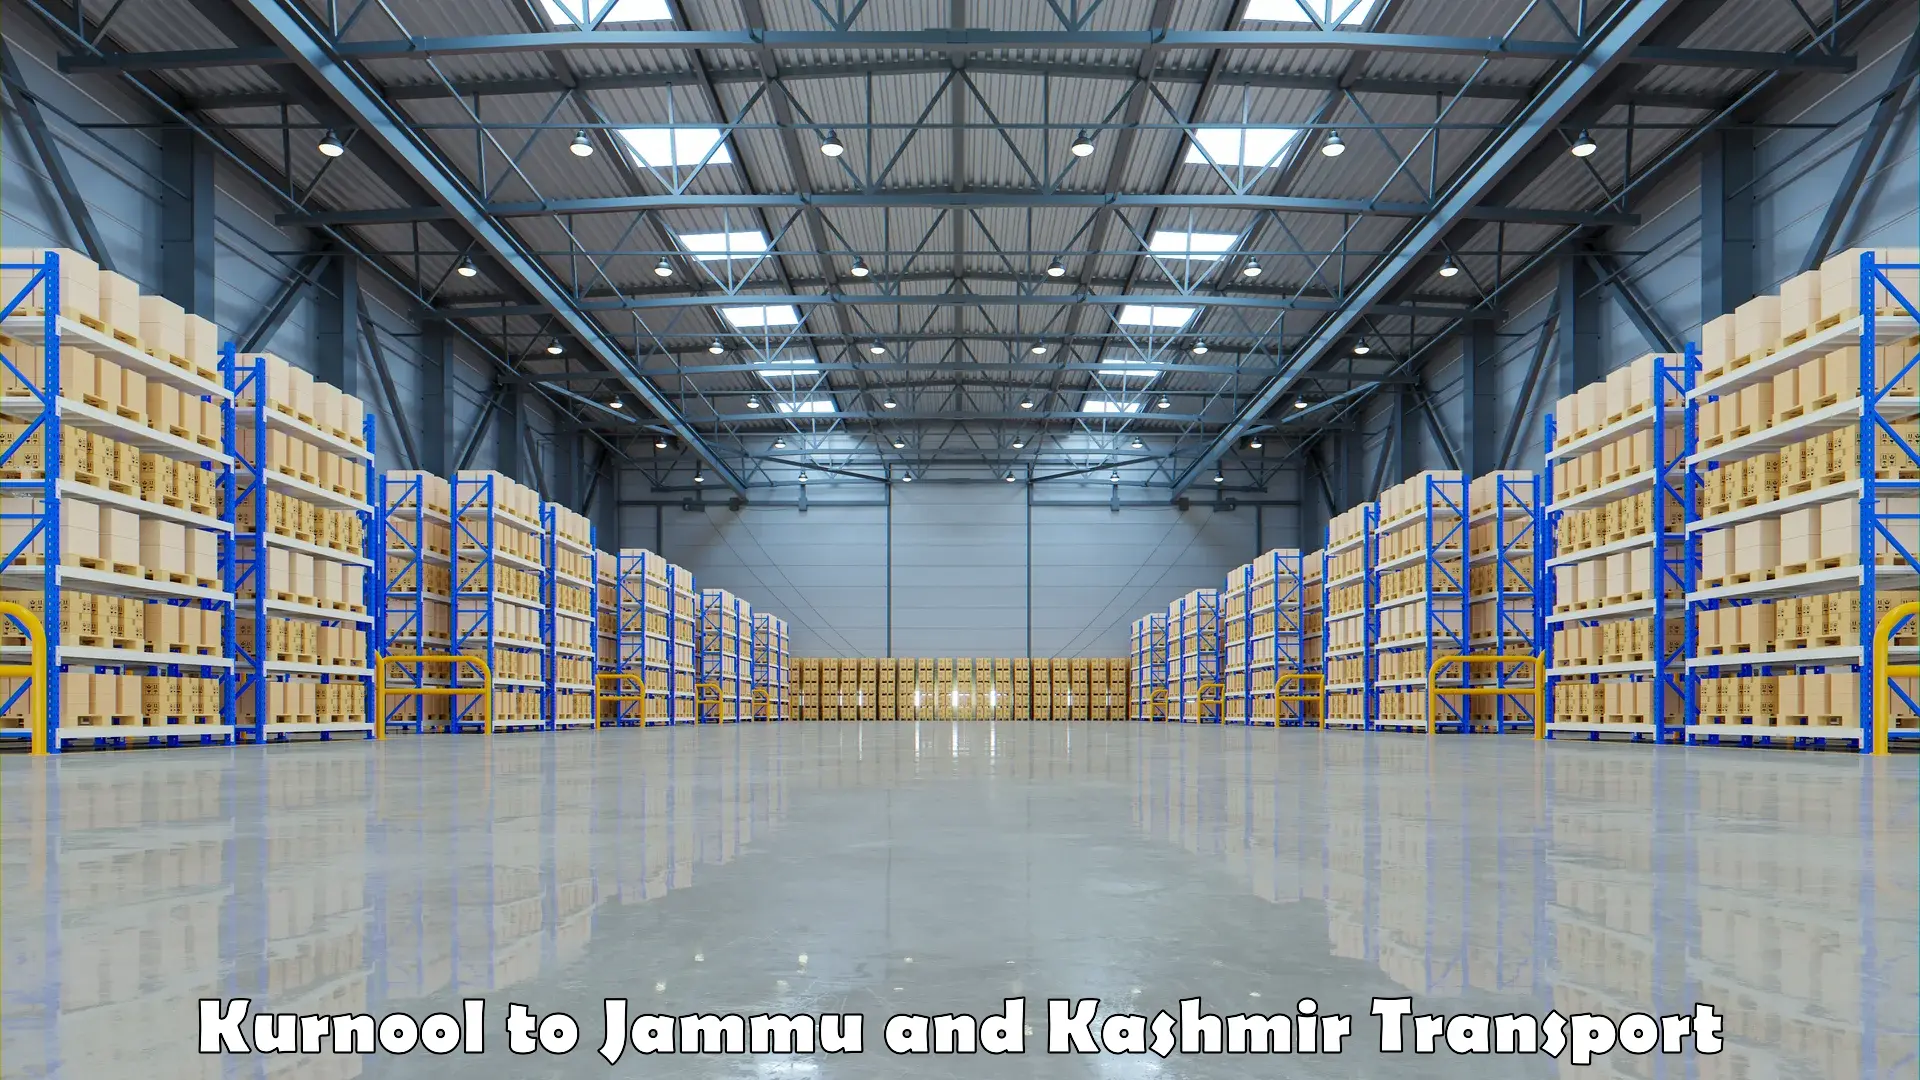 Lorry transport service Kurnool to Jammu and Kashmir